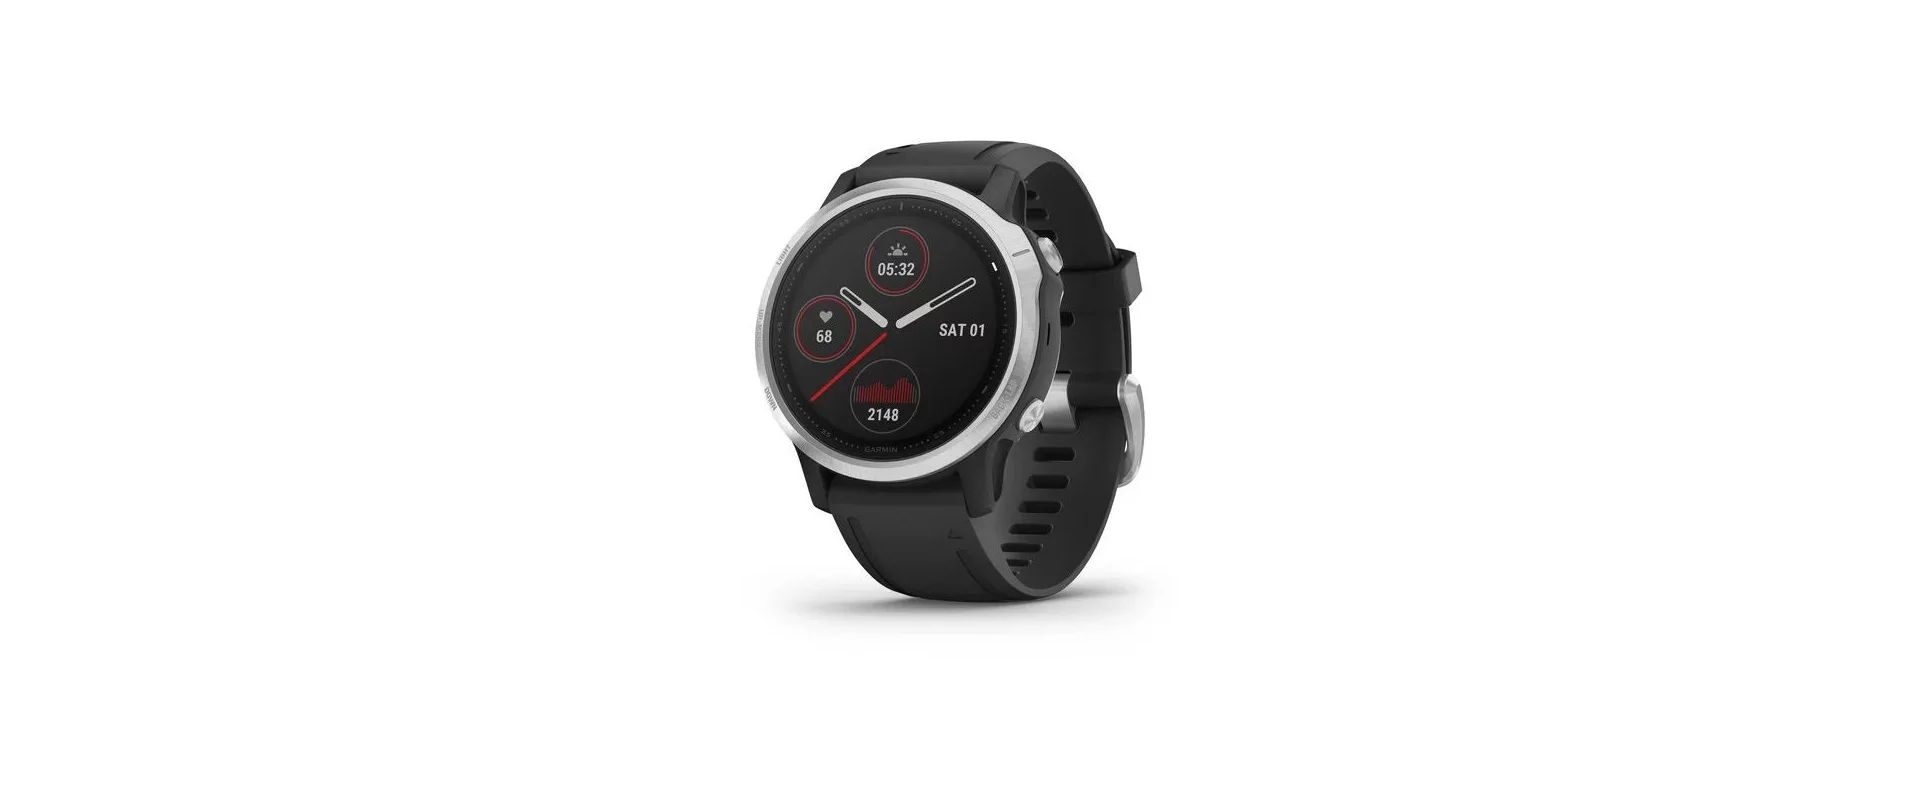 Garmin Fenix 6S / Смарт-часы беговые с GPS, HR и Garmin Pay